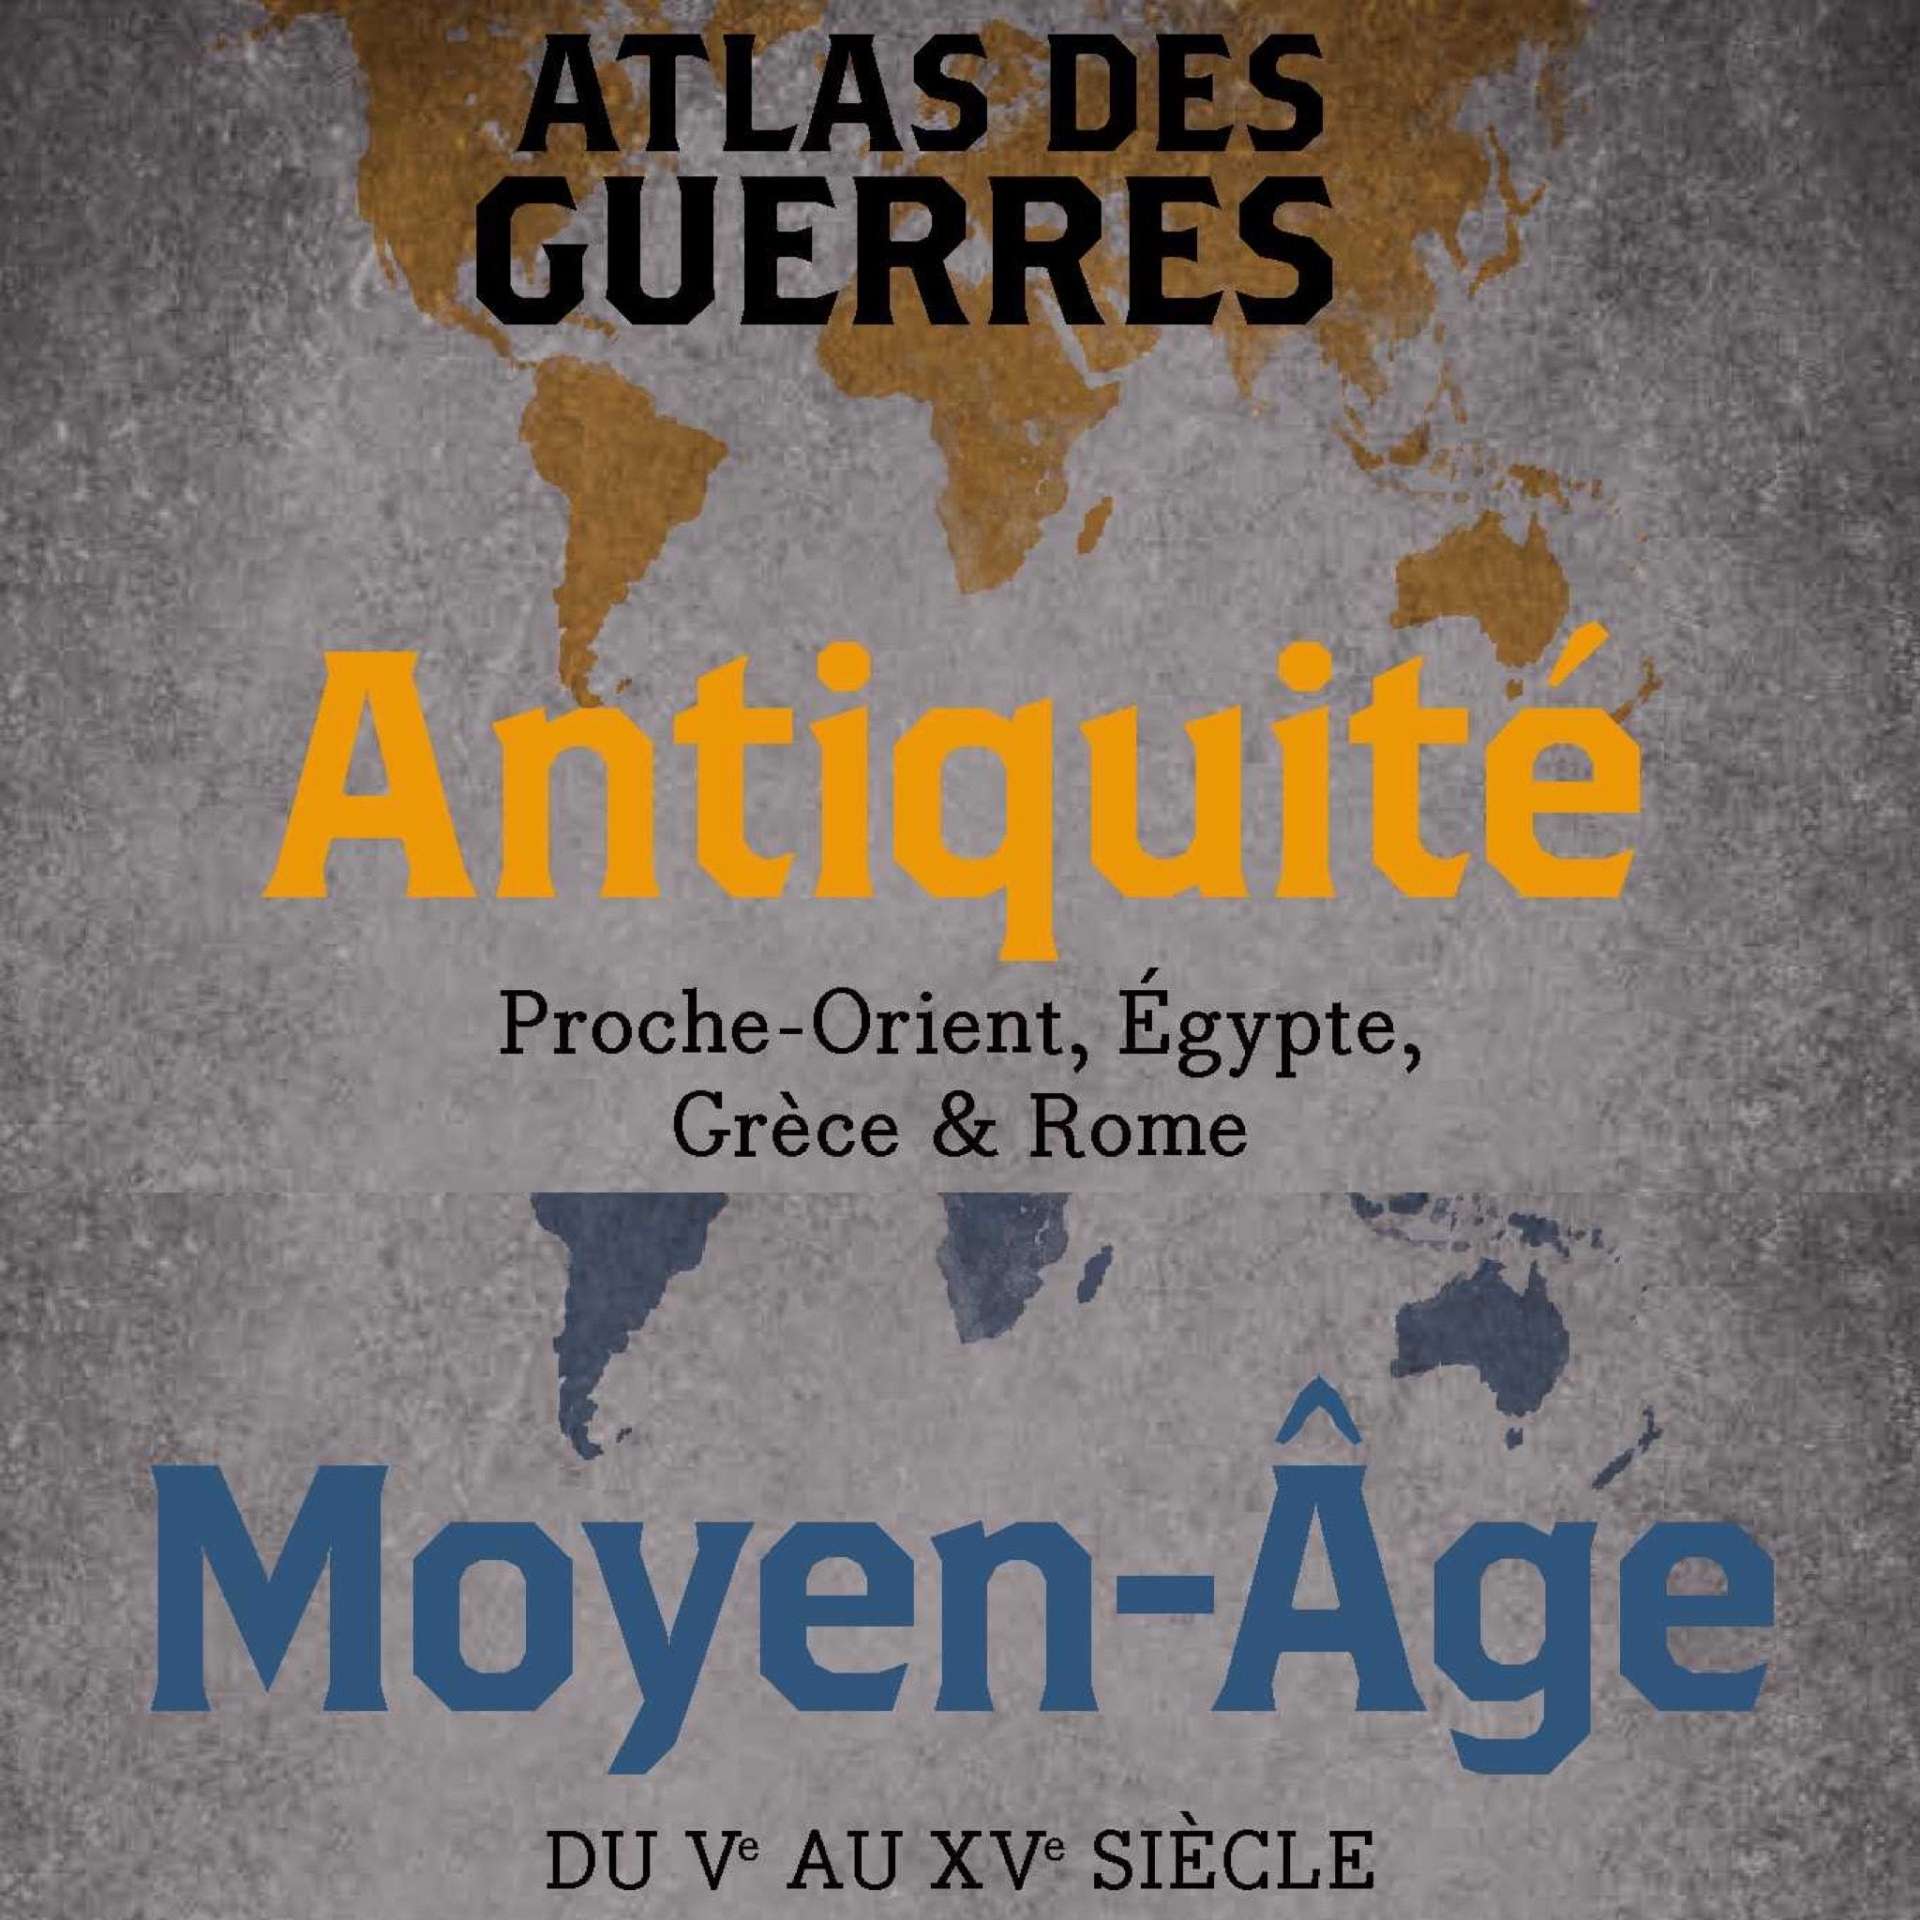 Atlas des guerres : Antiquité et Moyen Age